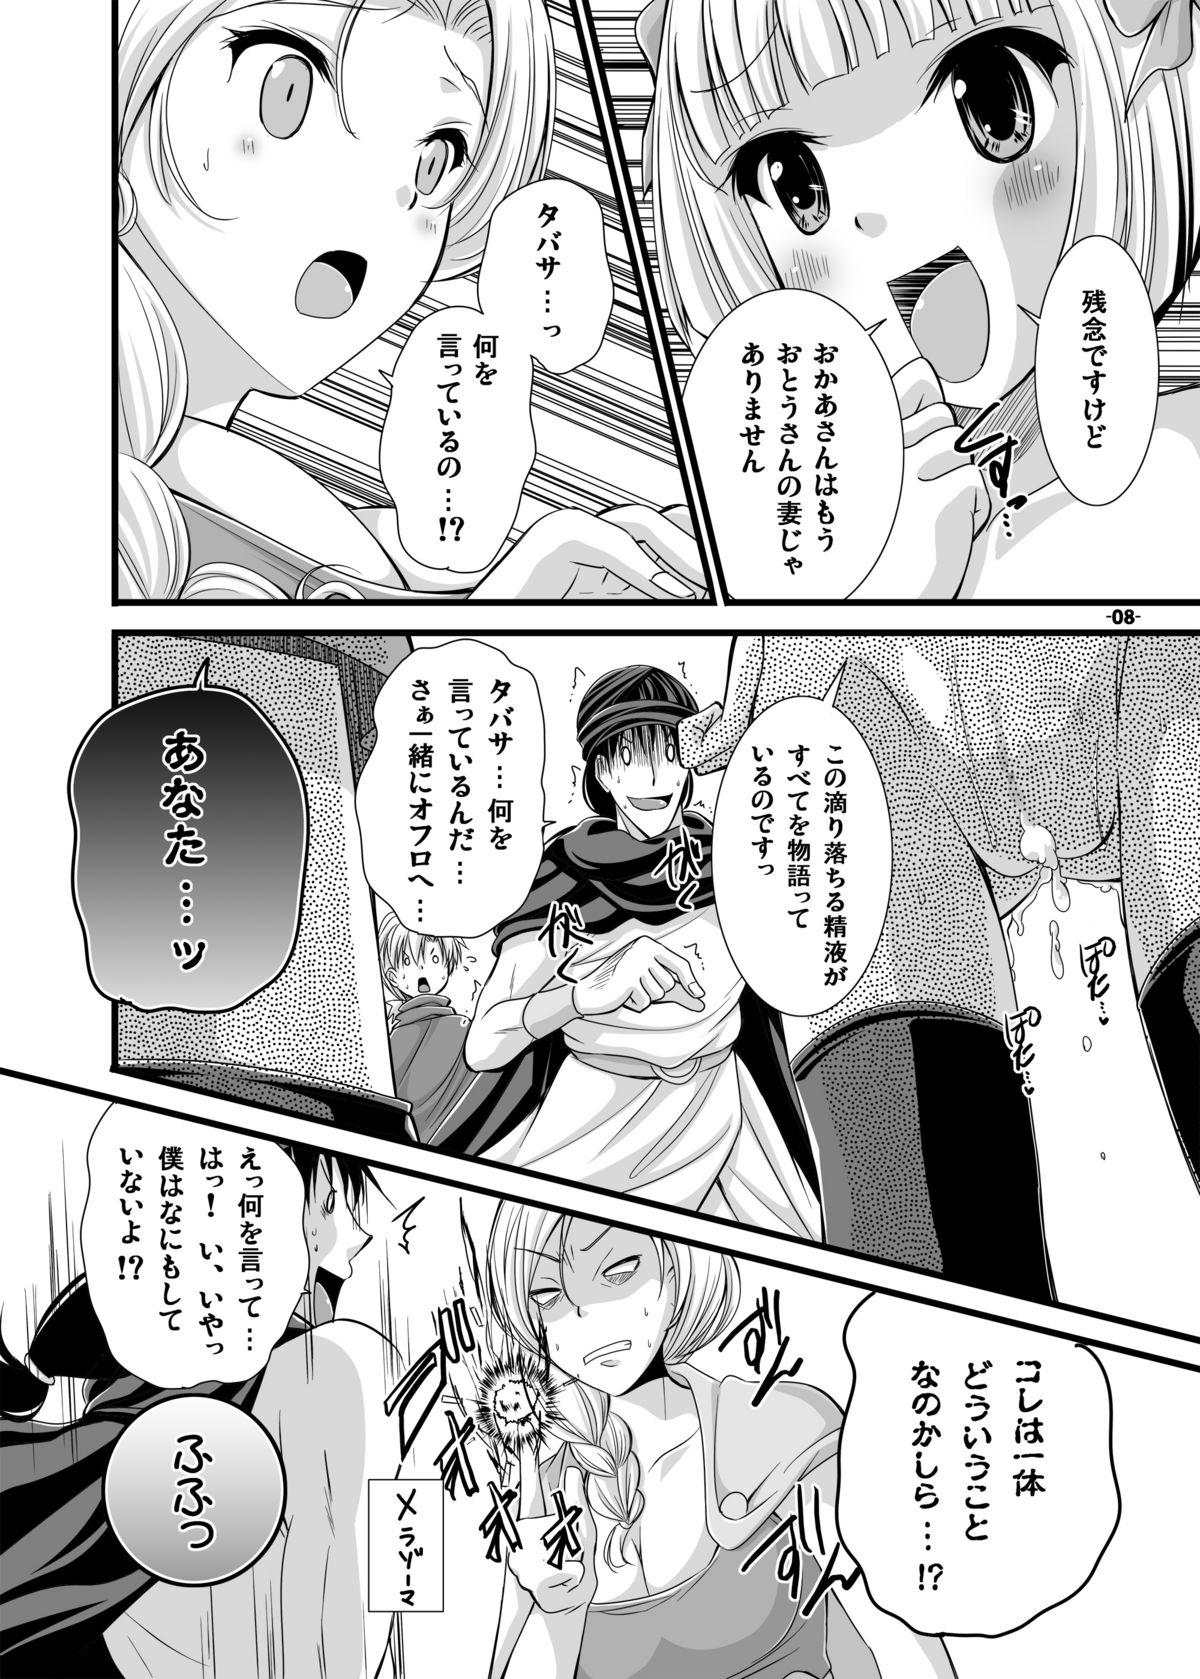 Show Battle no Ato ni... 3 - Dragon quest v Famosa - Page 8